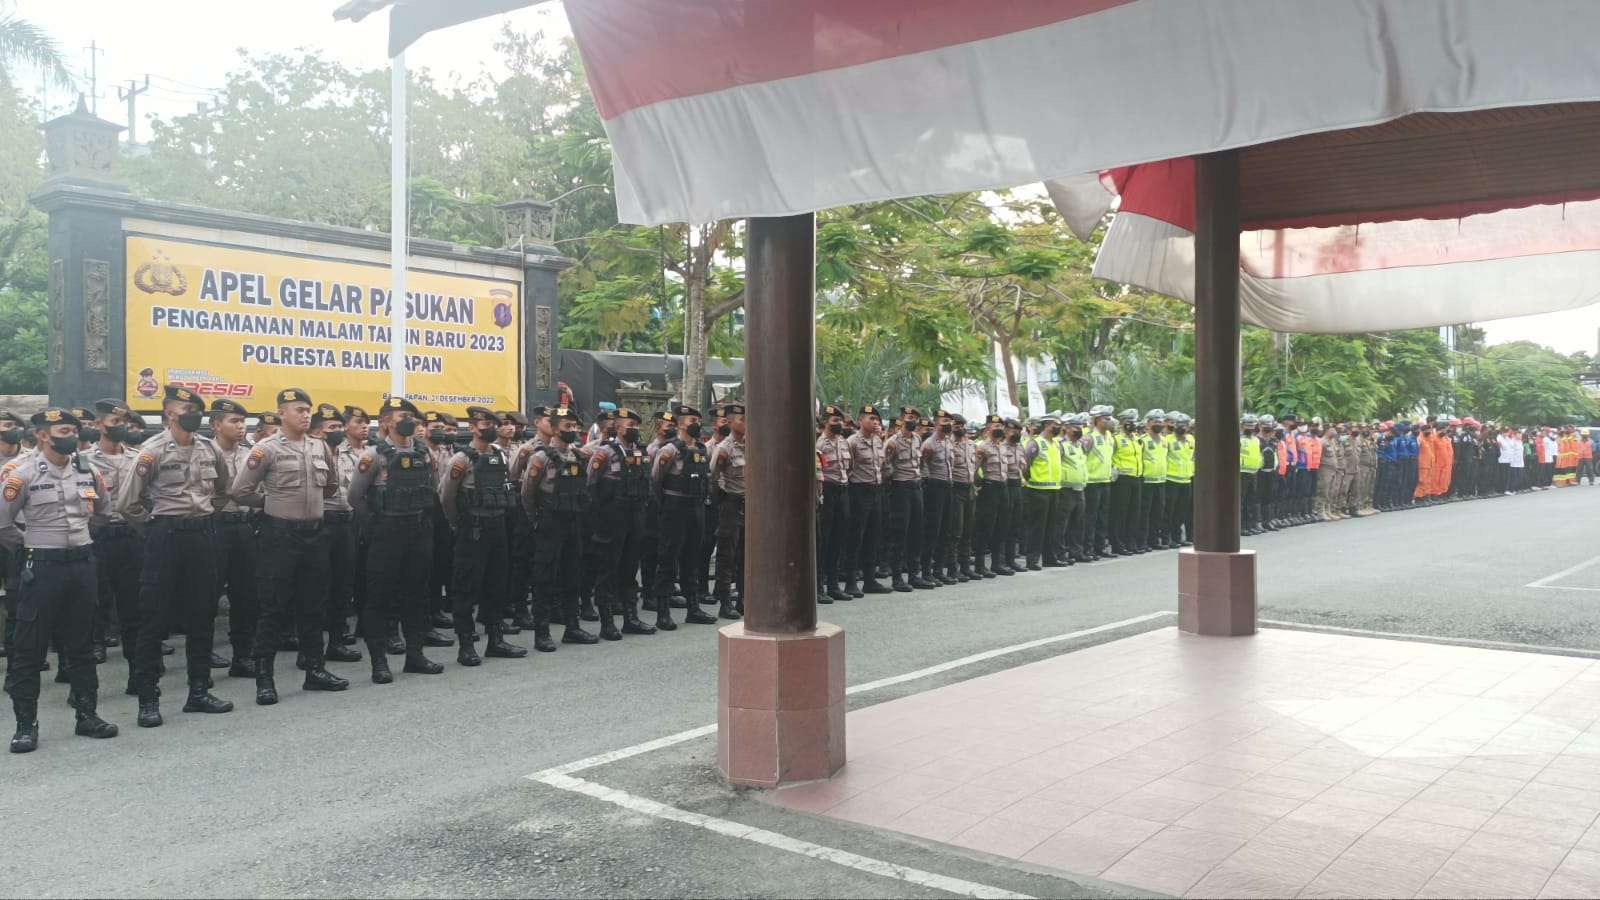 Ratusan personel gabungan mengikuti apel gelar pasukan dalam pengamanan malam tahun baru 2023, di Mako Polresta Balikpapan pada hari Sabtu (31/12/2022).(Foto:BorneoFlash.com/Niken).